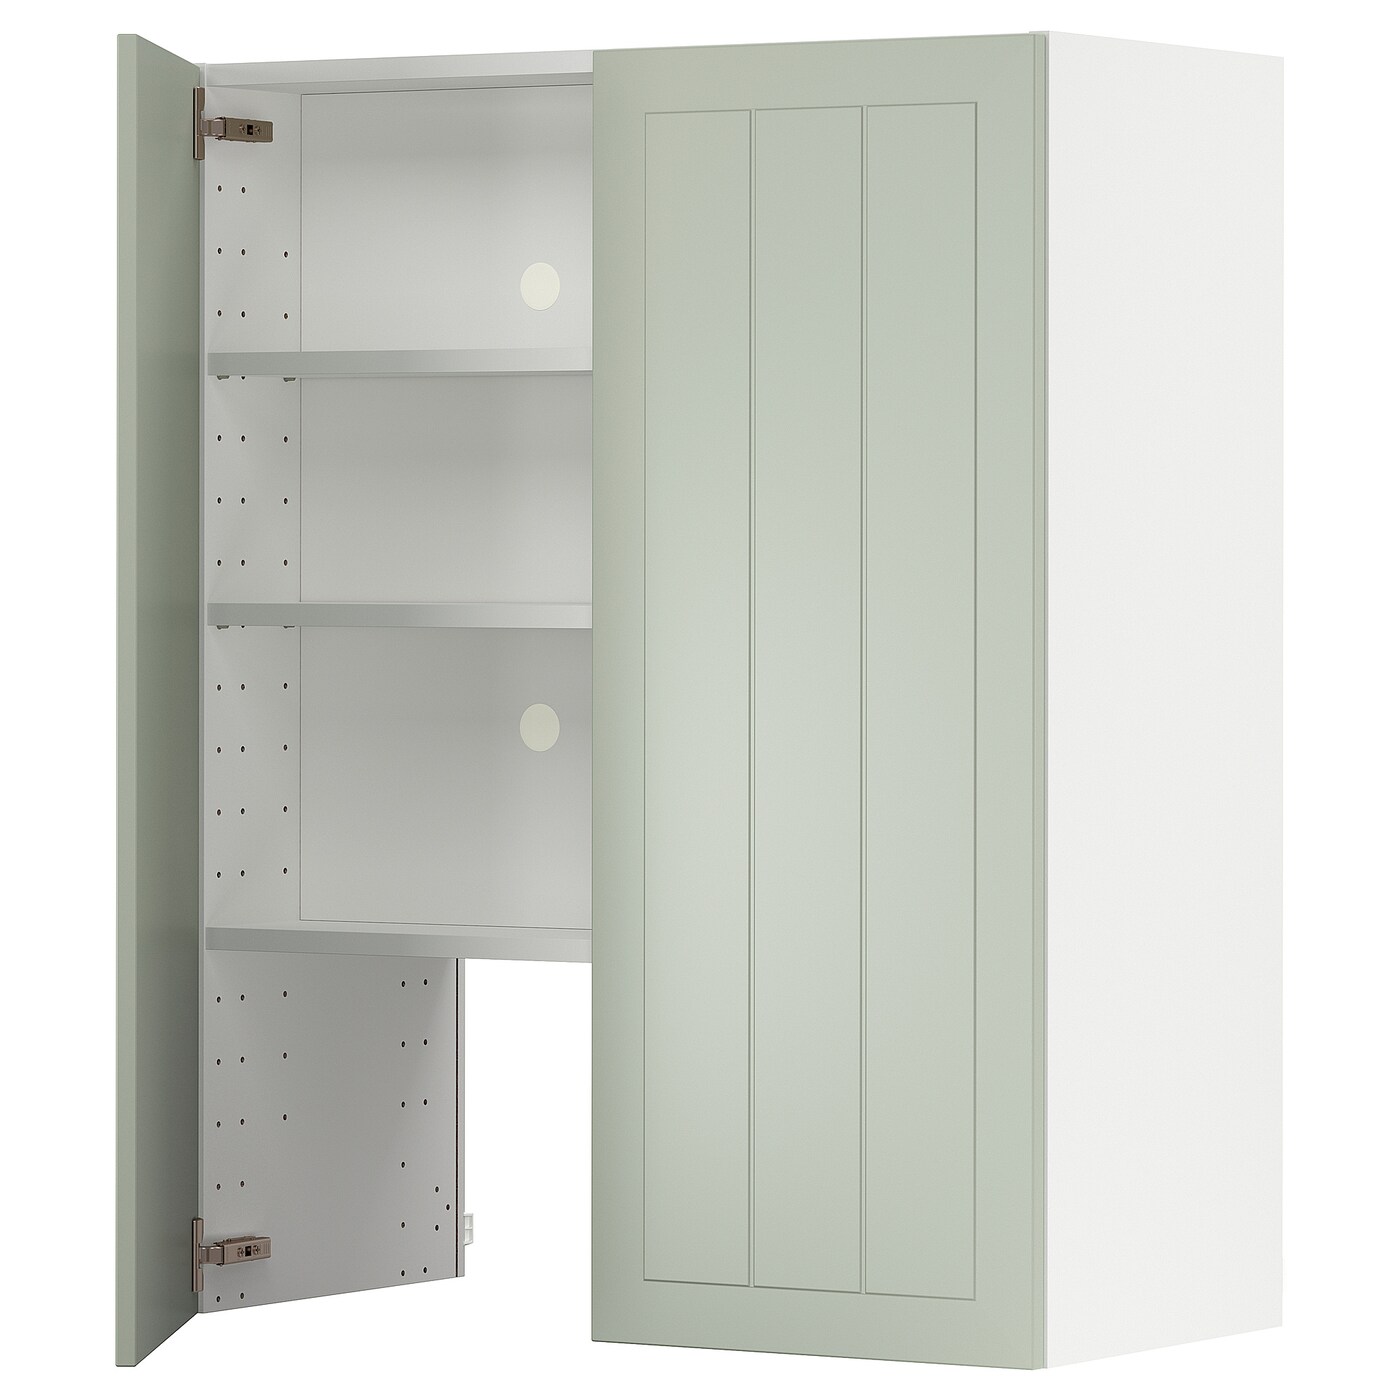 Навесной шкаф с полкой - METOD IKEA/ МЕТОД ИКЕА, 100х80 см, белый/зеленый